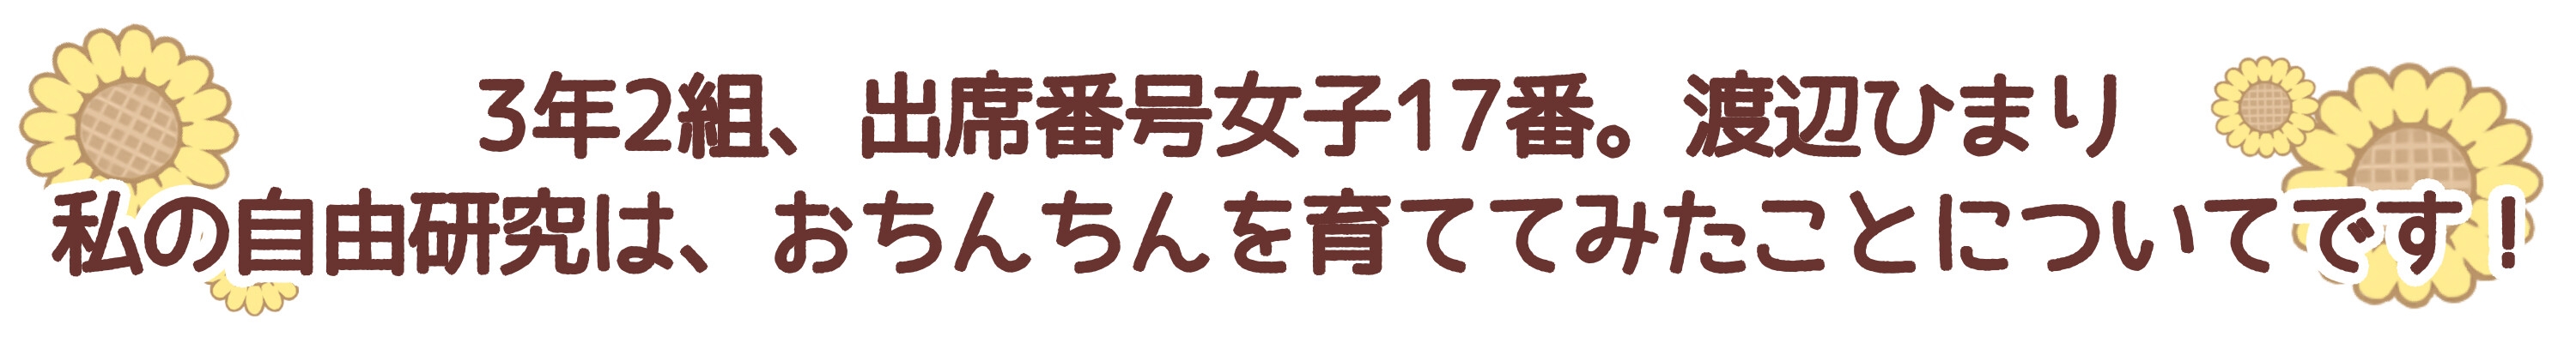 【ずう〜っと300円】ひまりちゃんの自由研究【オホ声ロリ】 [ありがた屋]